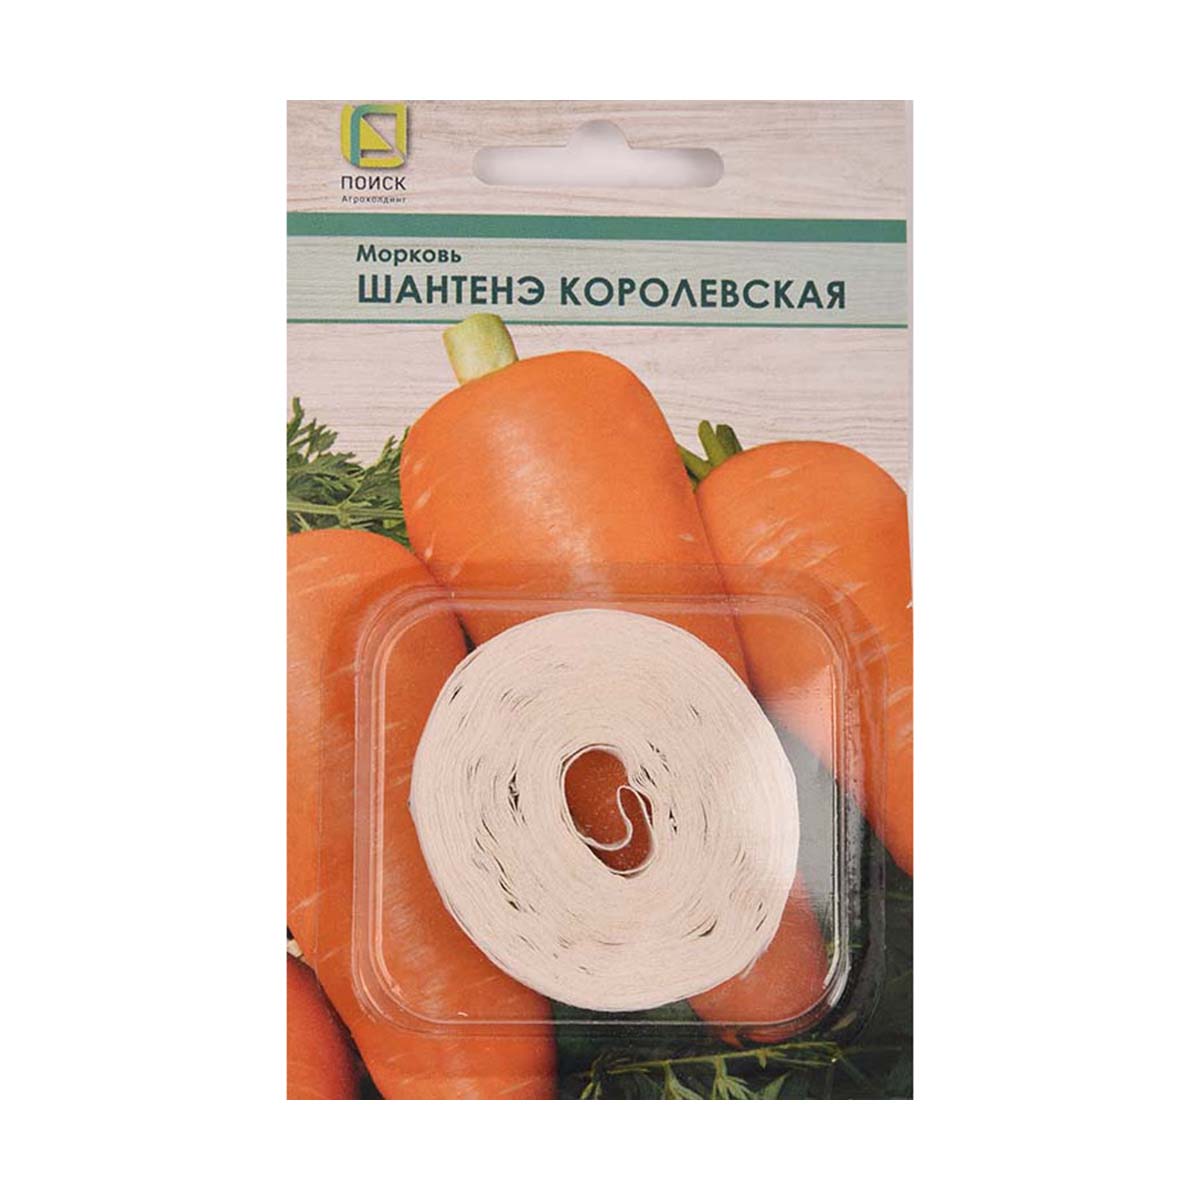 Семена на ленте морковь "шантенэ королевская" 8 м (10/100) "поиск"